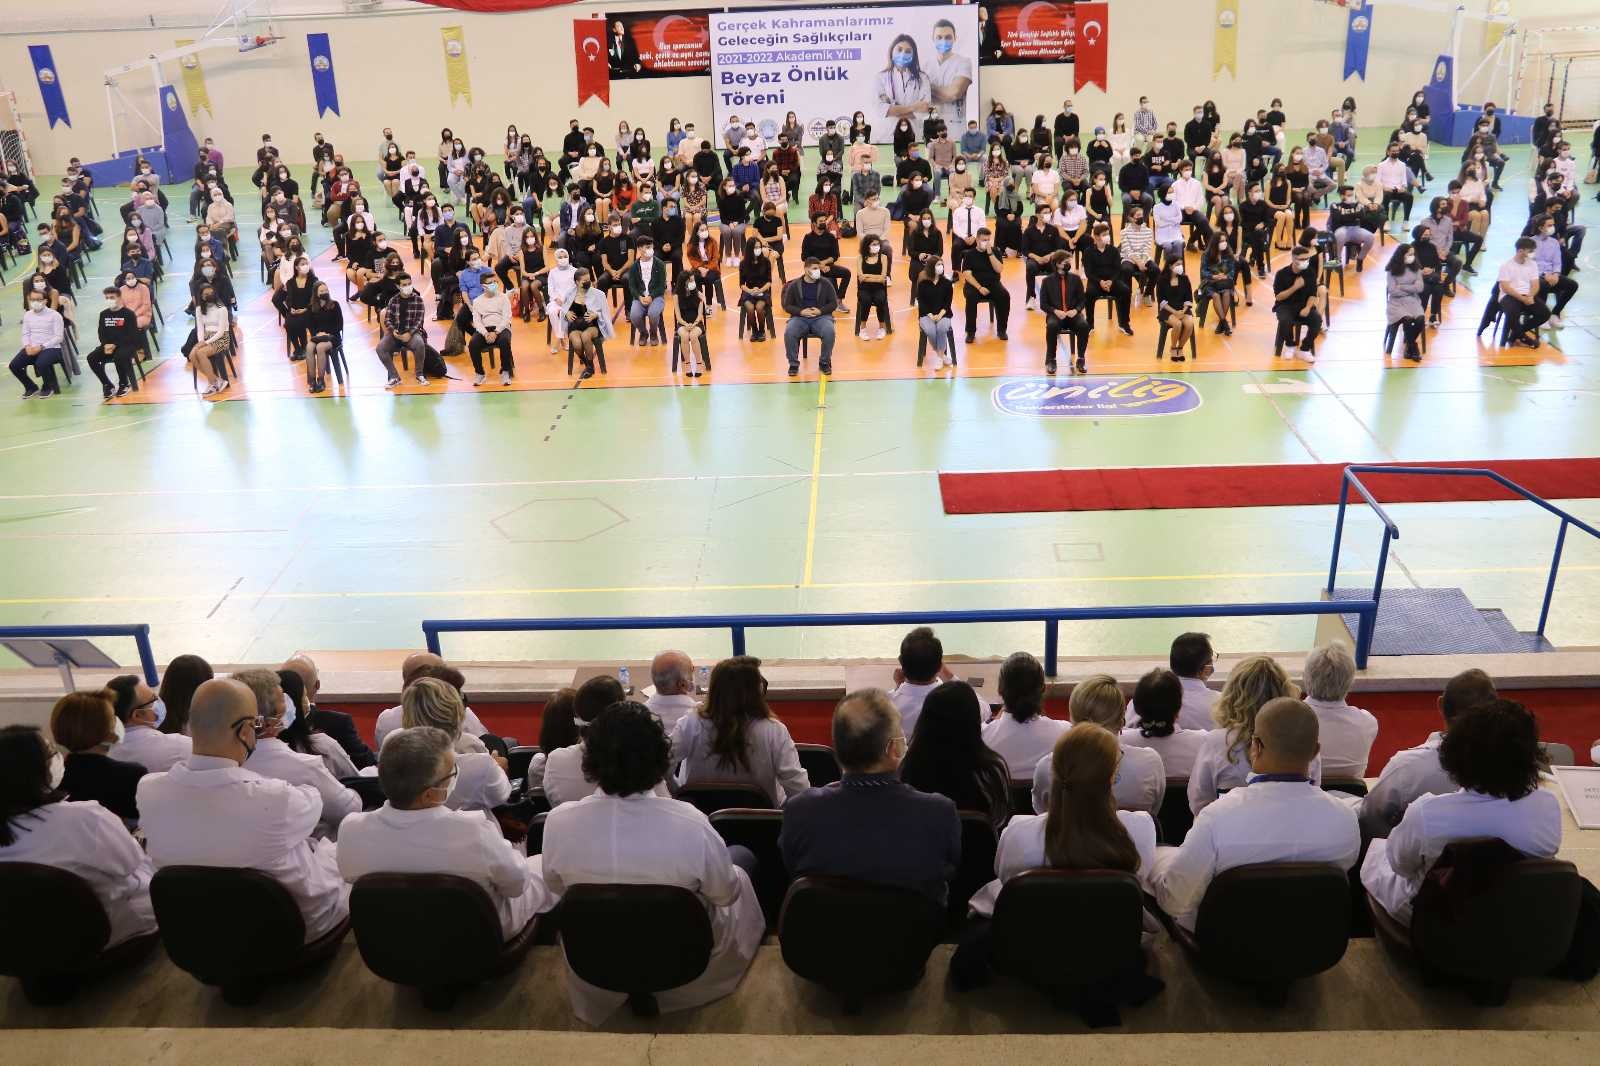 Edirne’de Tıp Fakültesi öğrencileri için “Beyaz Önlük” töreni düzenlendi #edirne